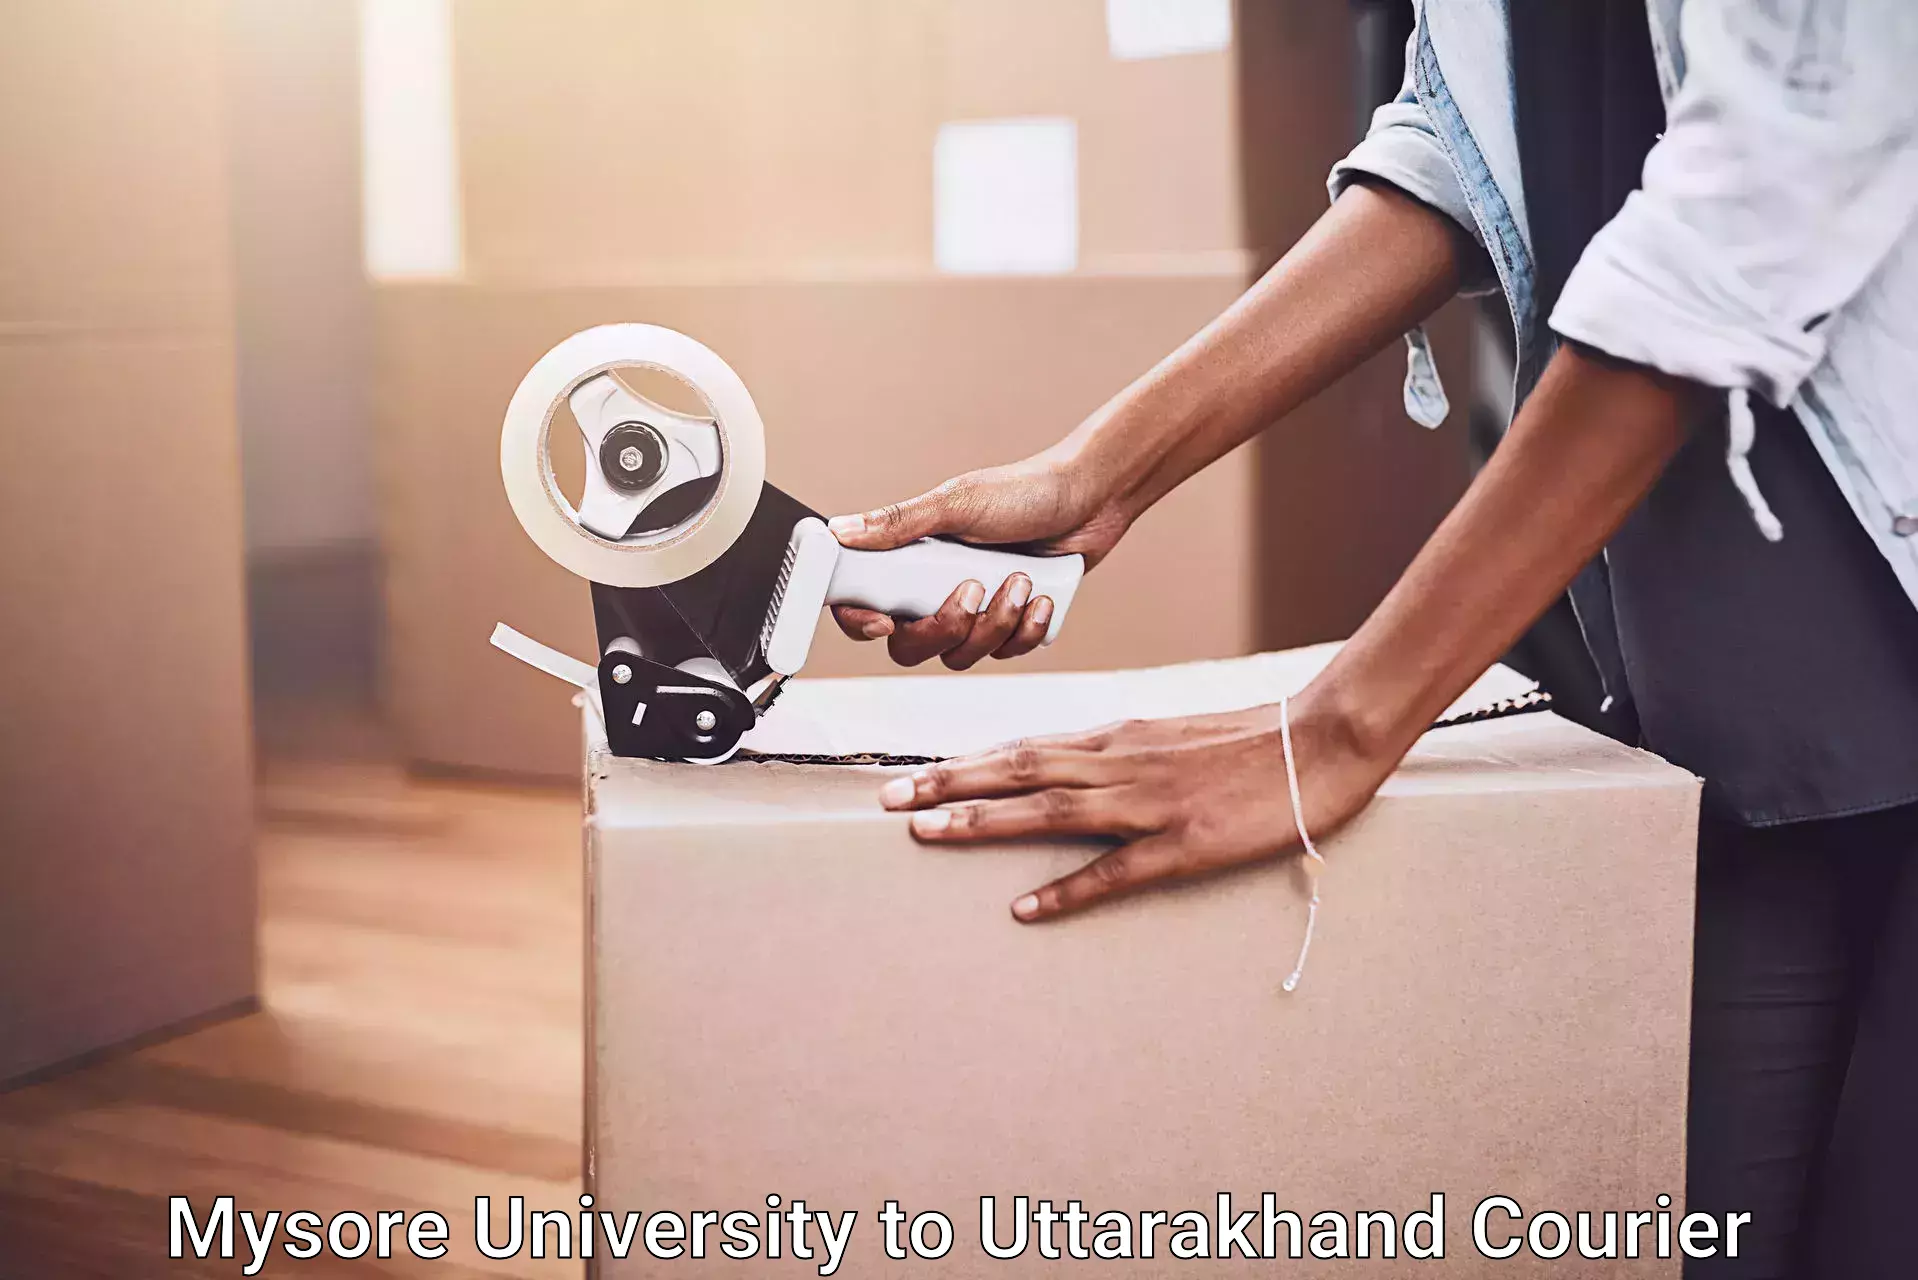 Furniture transport experts Mysore University to Kotdwara